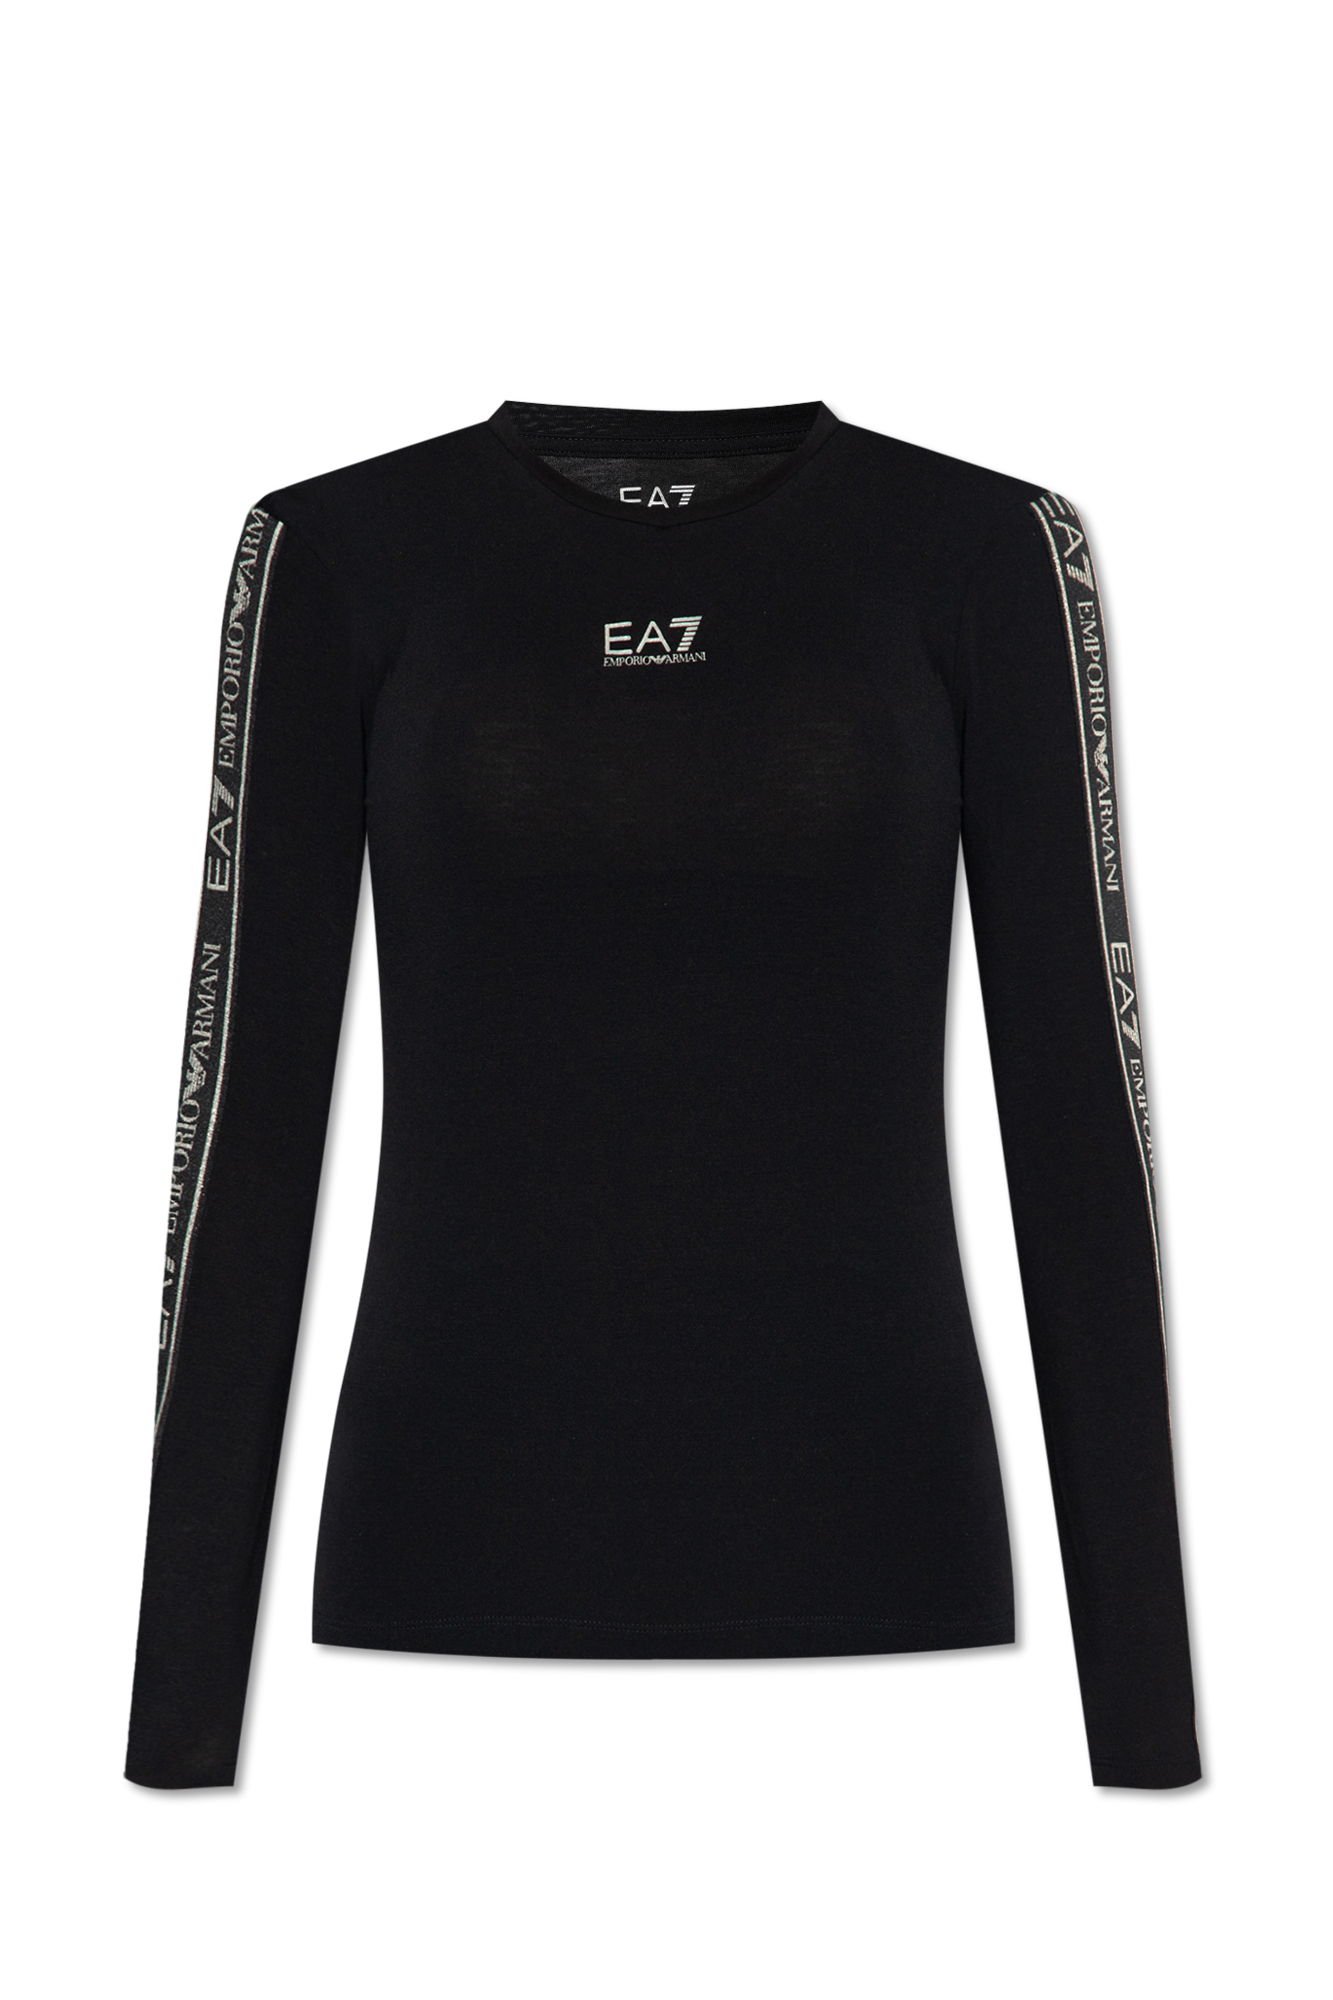 EA7 EMPORIO ARMANI T-Shirt 6Kpt23-Pj6Ez Black